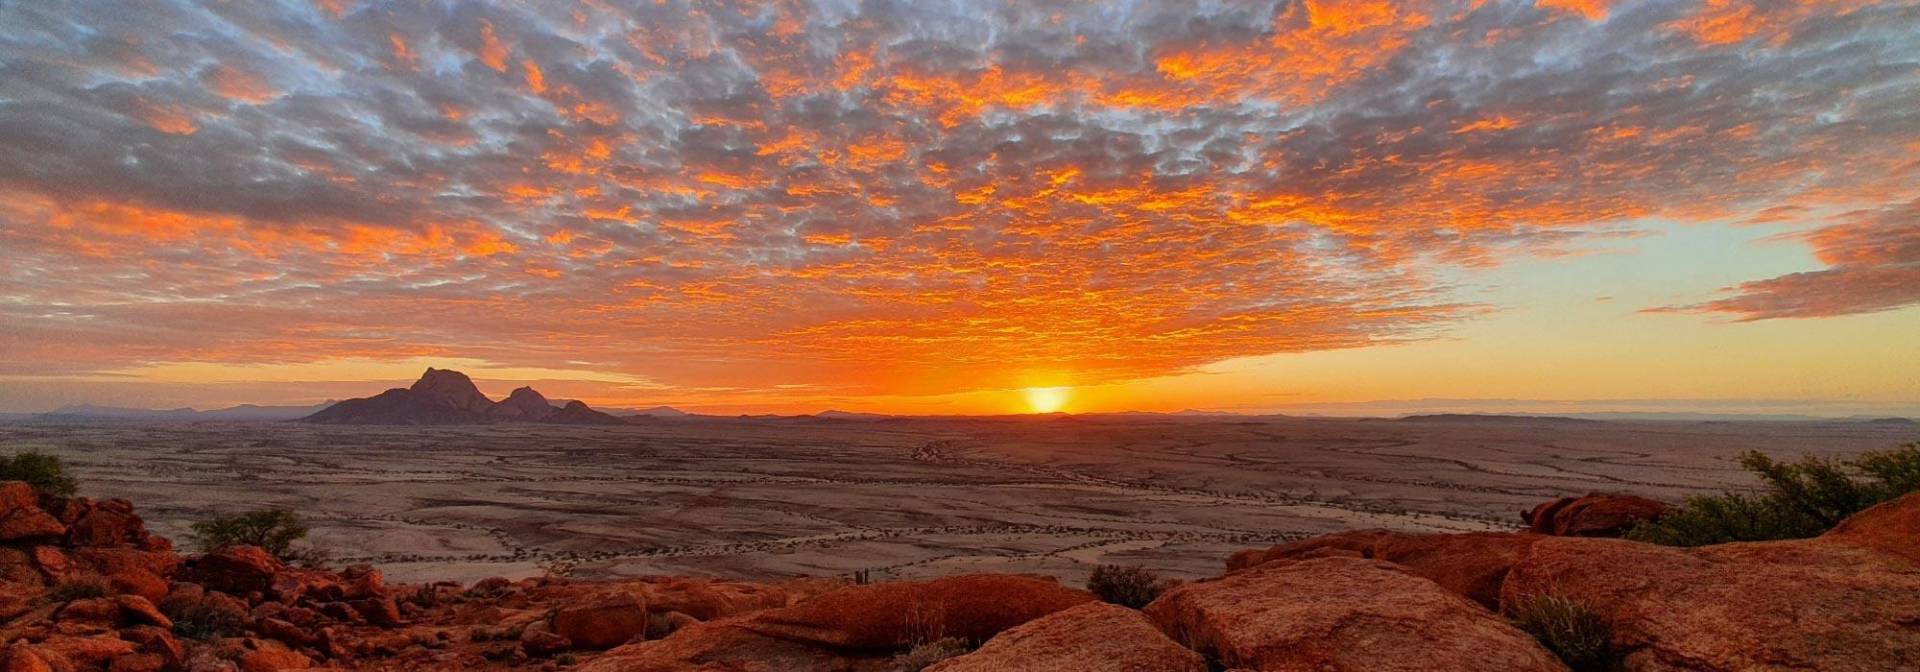 Magischer Sonnenuntergang in Namibia